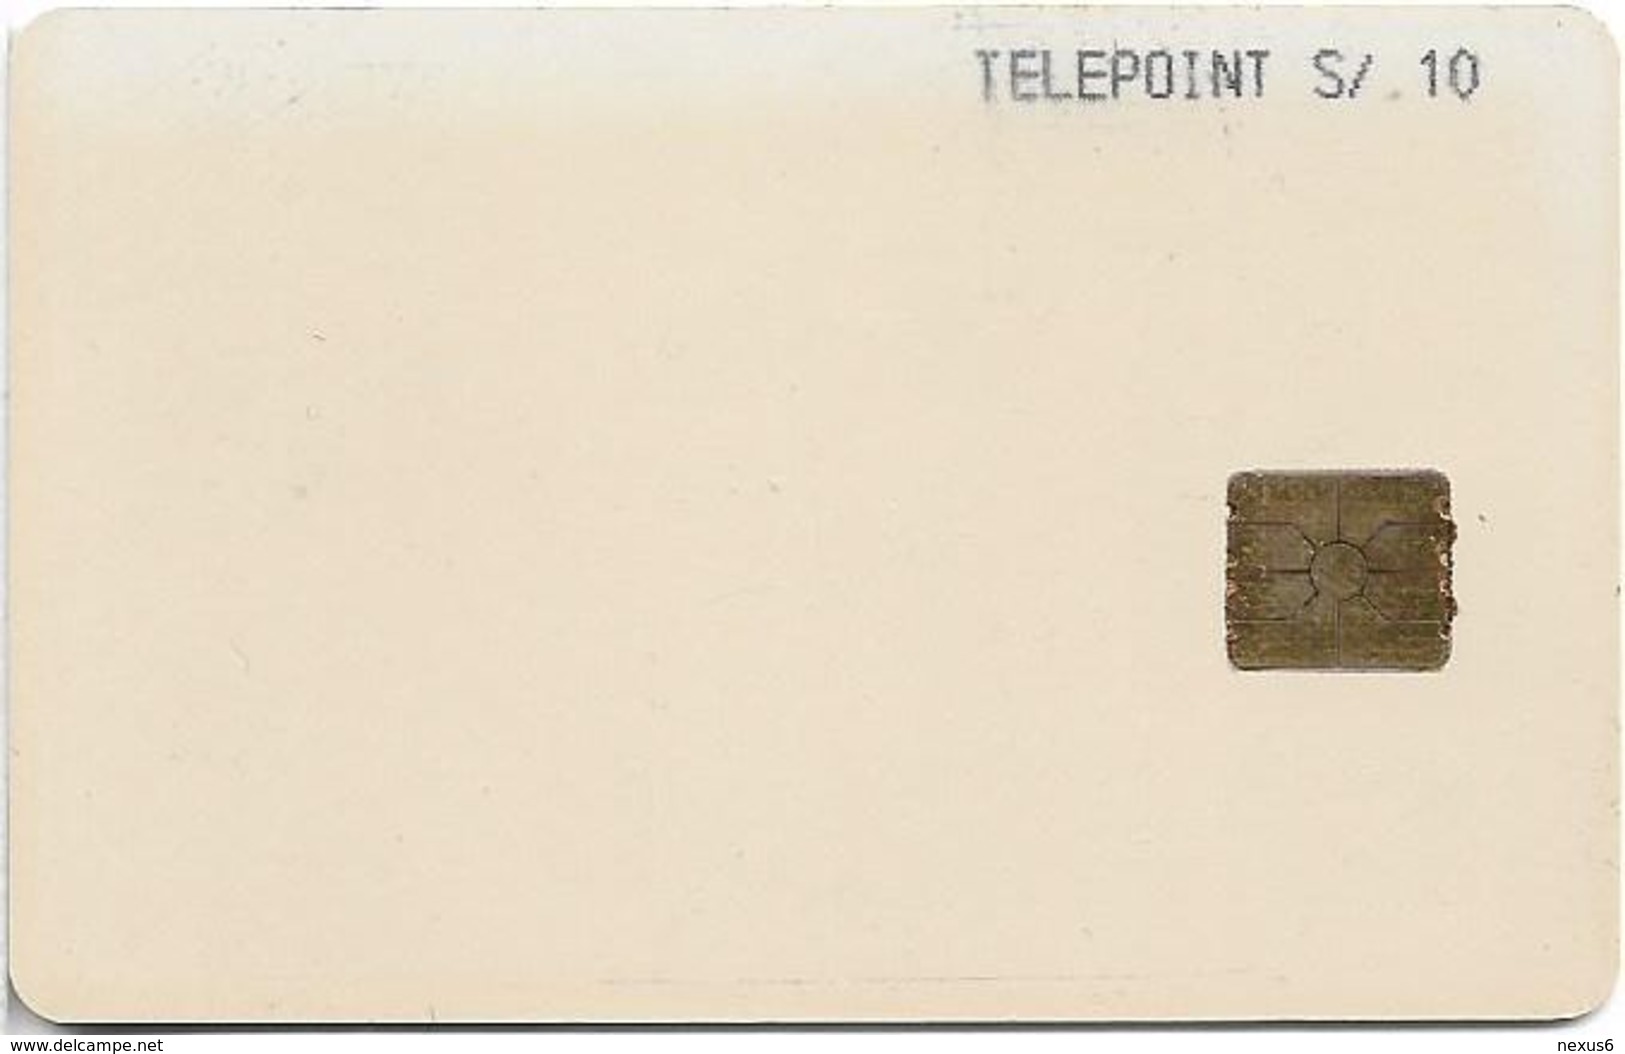 Peru - Telepoint White Prueba Test Card 10Sol, Used (check Photos!) - Perú